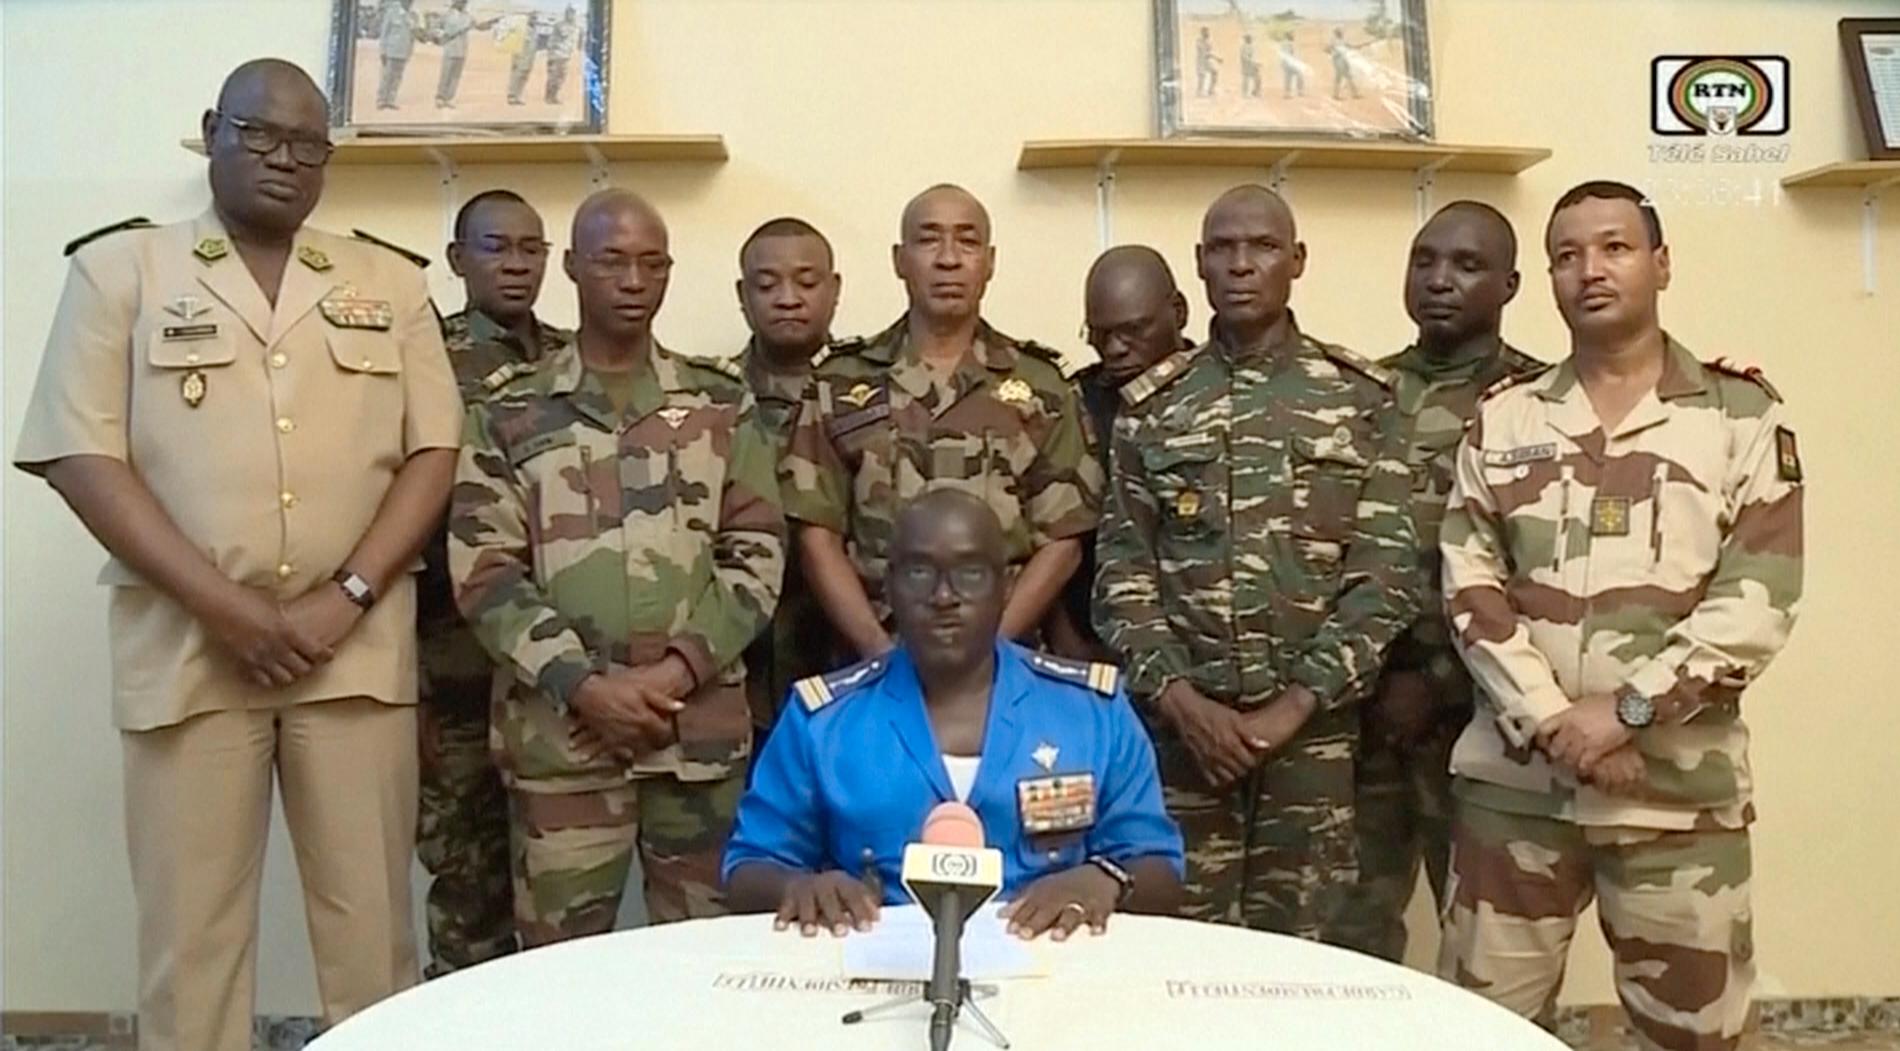 Nigeriska militärer framträdde sent på onsdagen i nationell tv i Niger och uppgav att de avsatt landets president Mohamed Bazoum. De meddelade också att landets gränser stängts och att utegångsförbud råder "tills vidare".